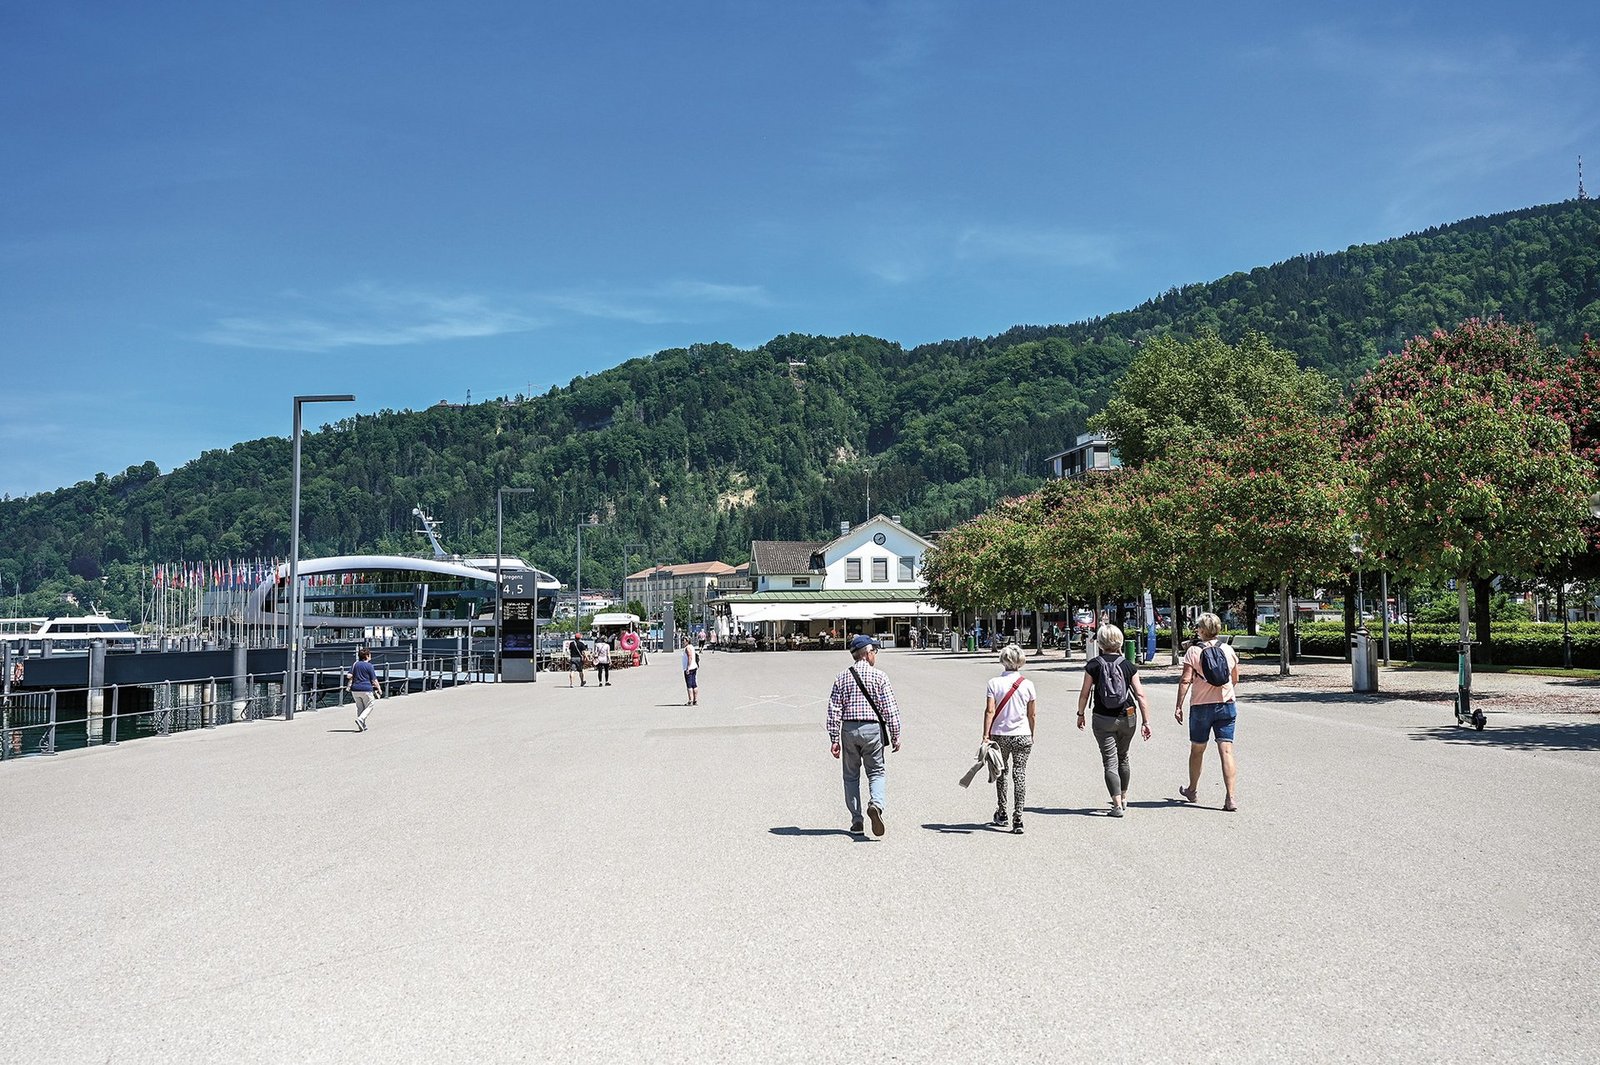 Der Hafen in Bregenz, am Rand sieht man den See mit den Schiffen und Leute laufen herum